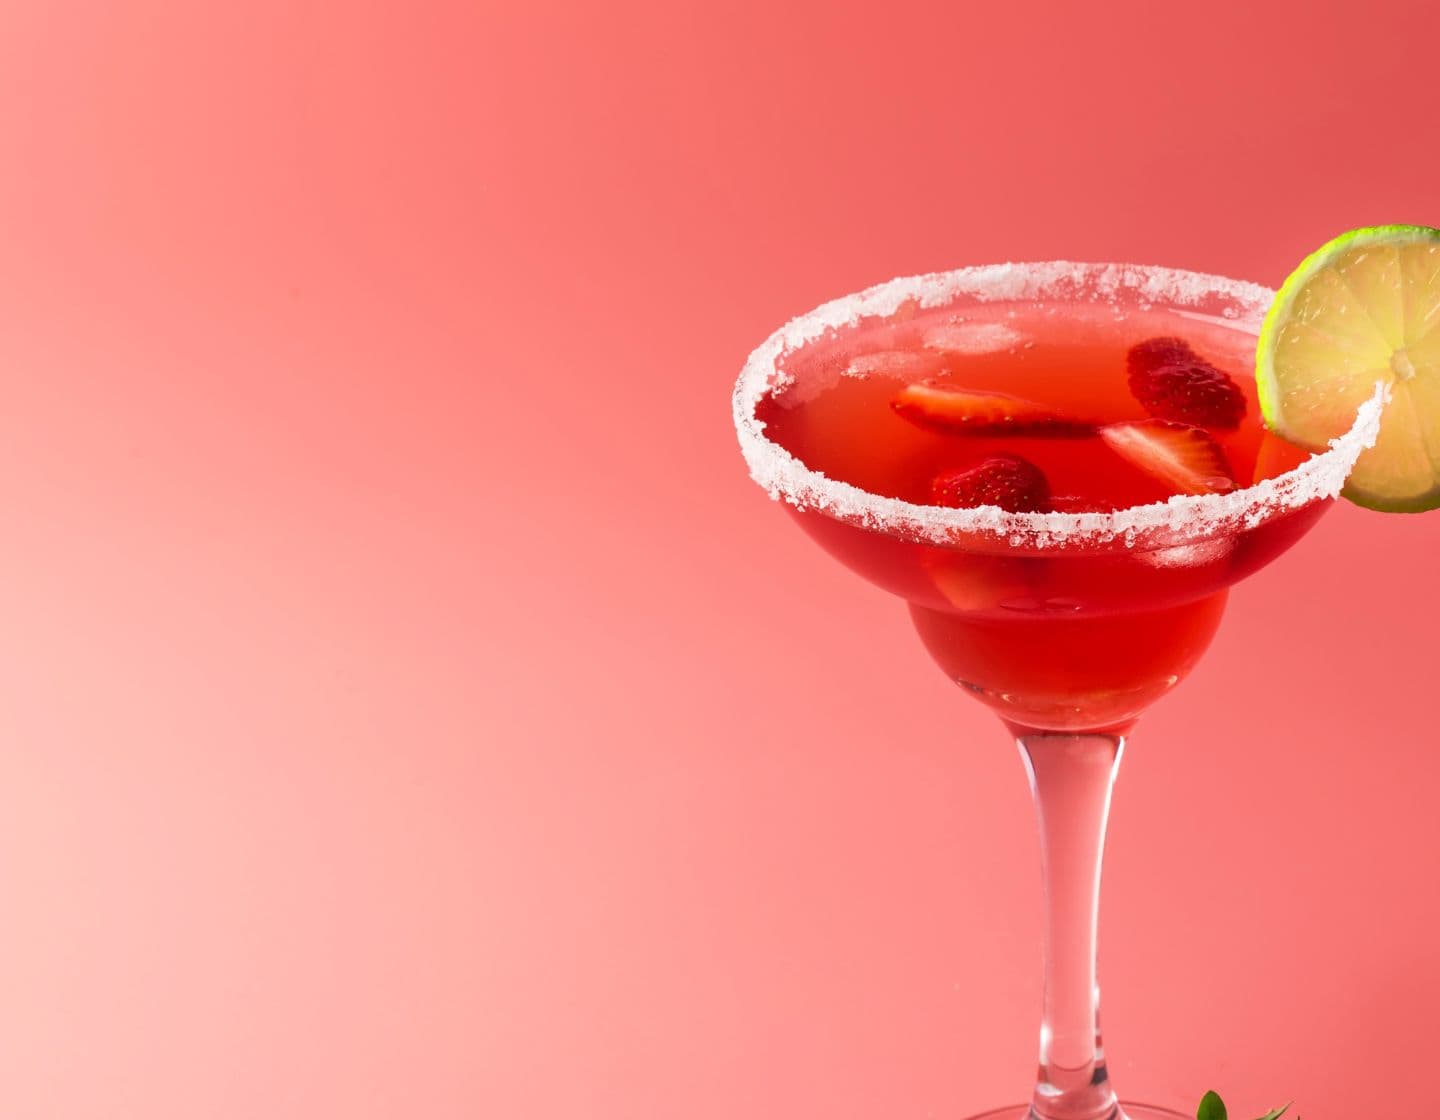 Rot gefärbter Margarita-Cocktail mit Salz am Rand eines Margarita-Glases und einem Limettenrad als Garnitur. 